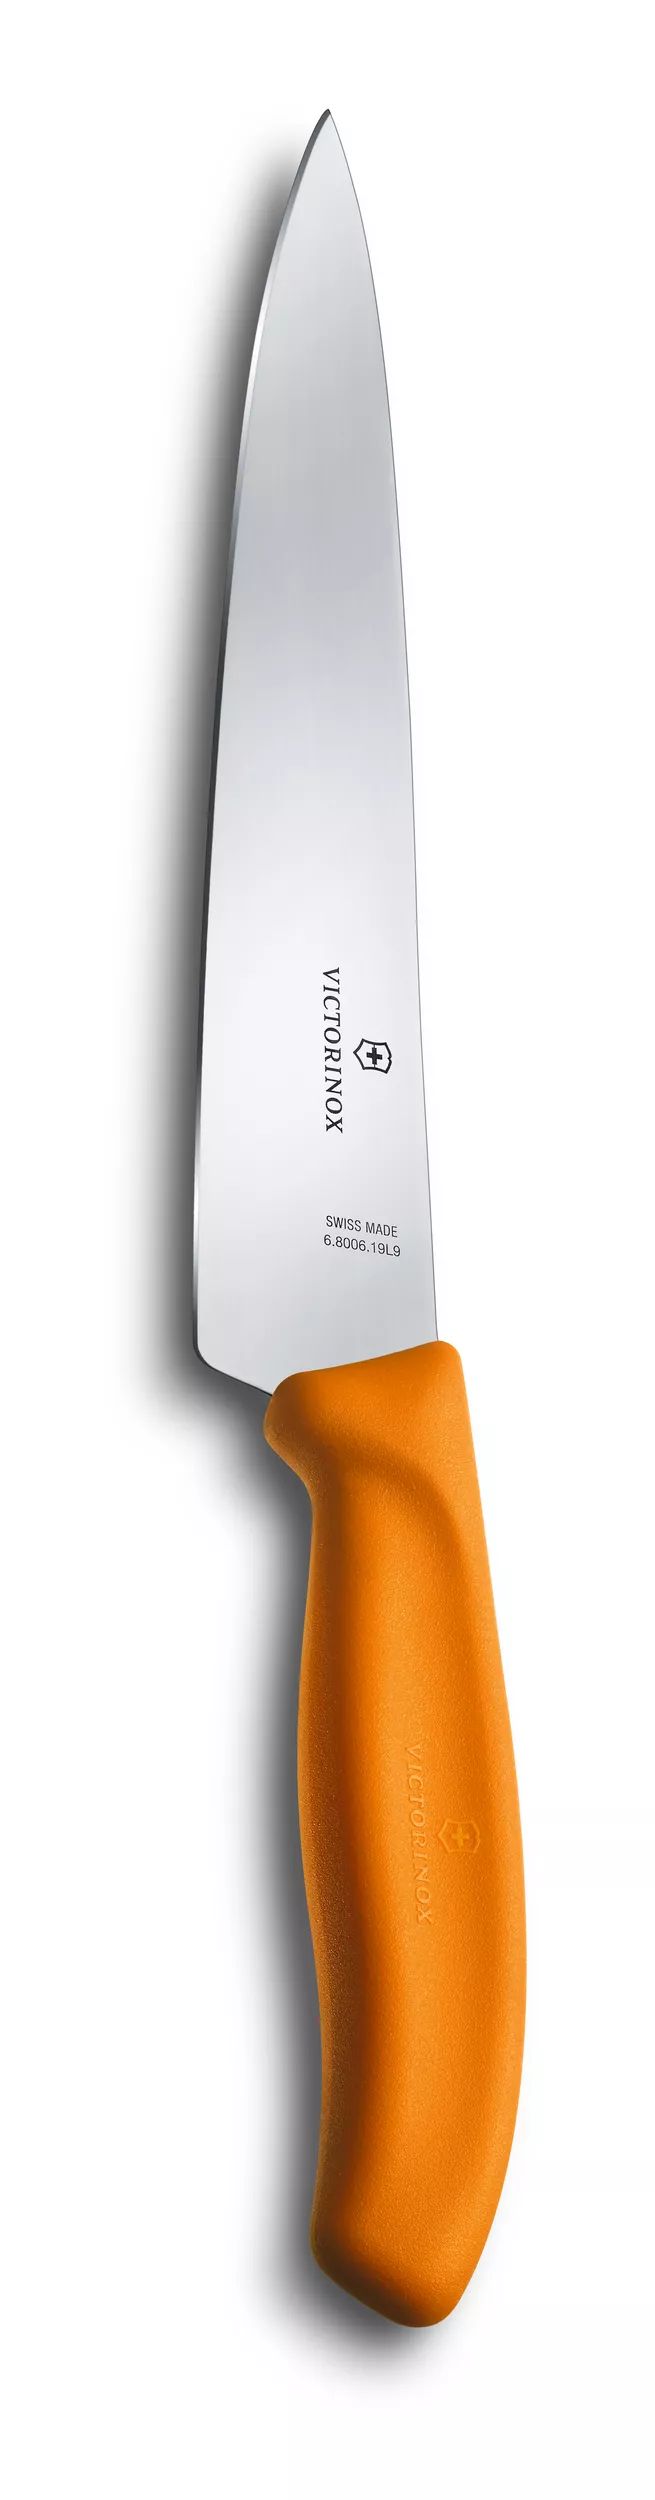 Couteau de chef Swiss Classic - 6.8006.19L9B